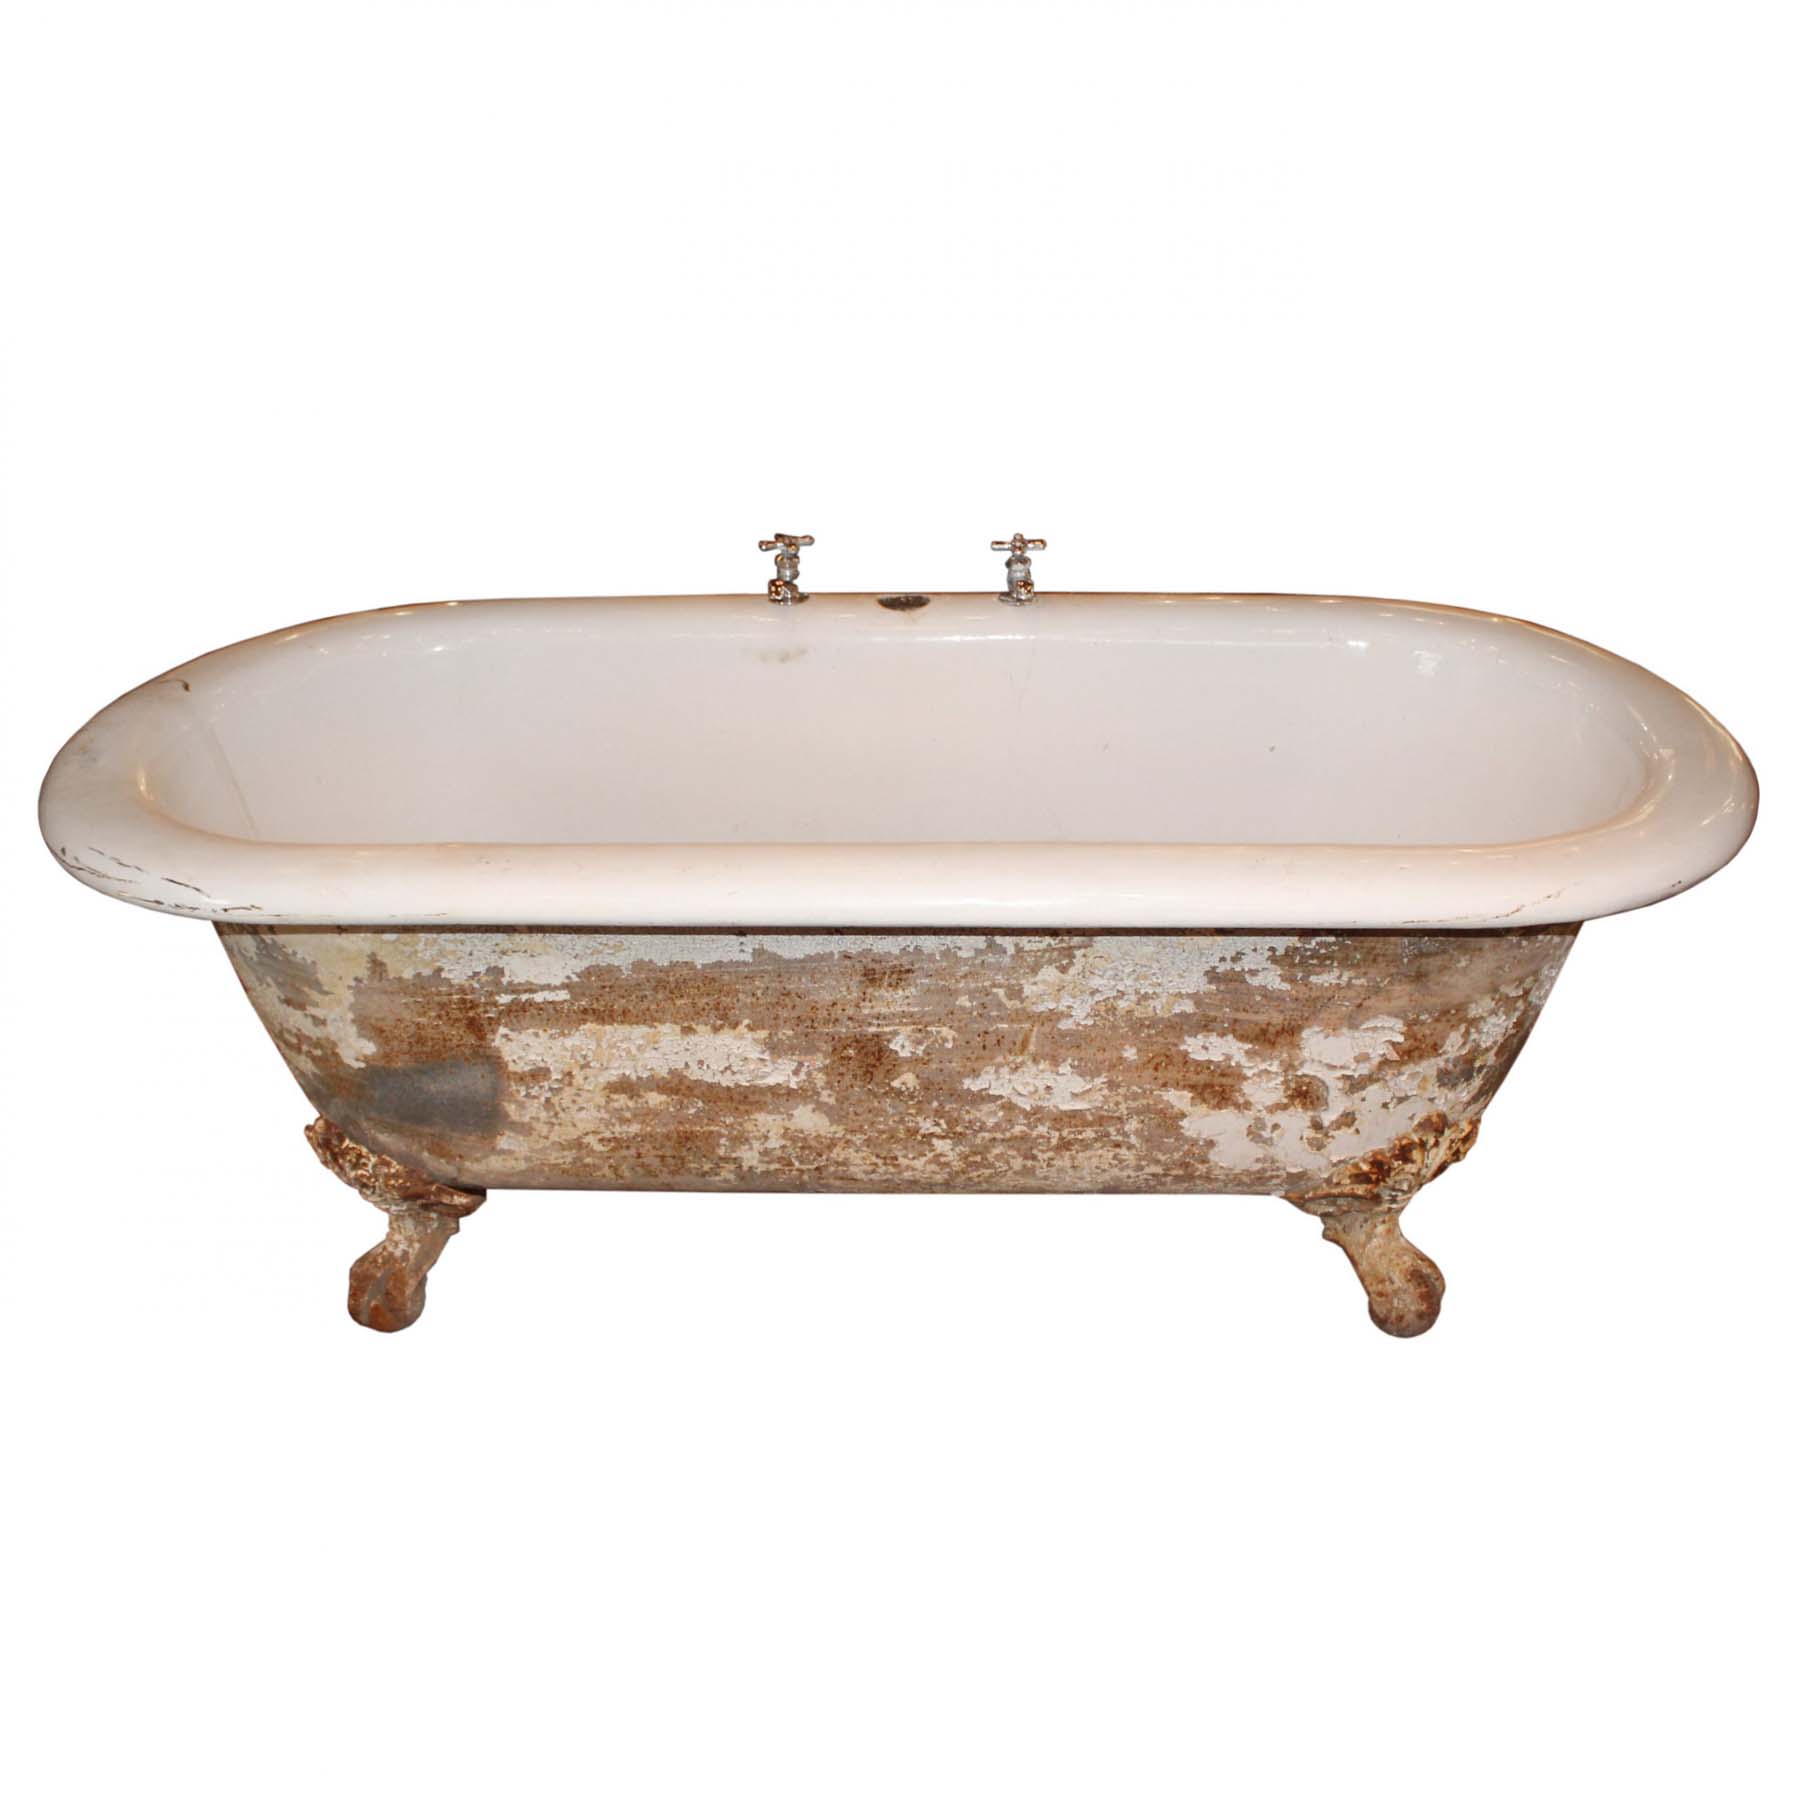 Rare Antique Clawfoot Bath Tub with Center Drain